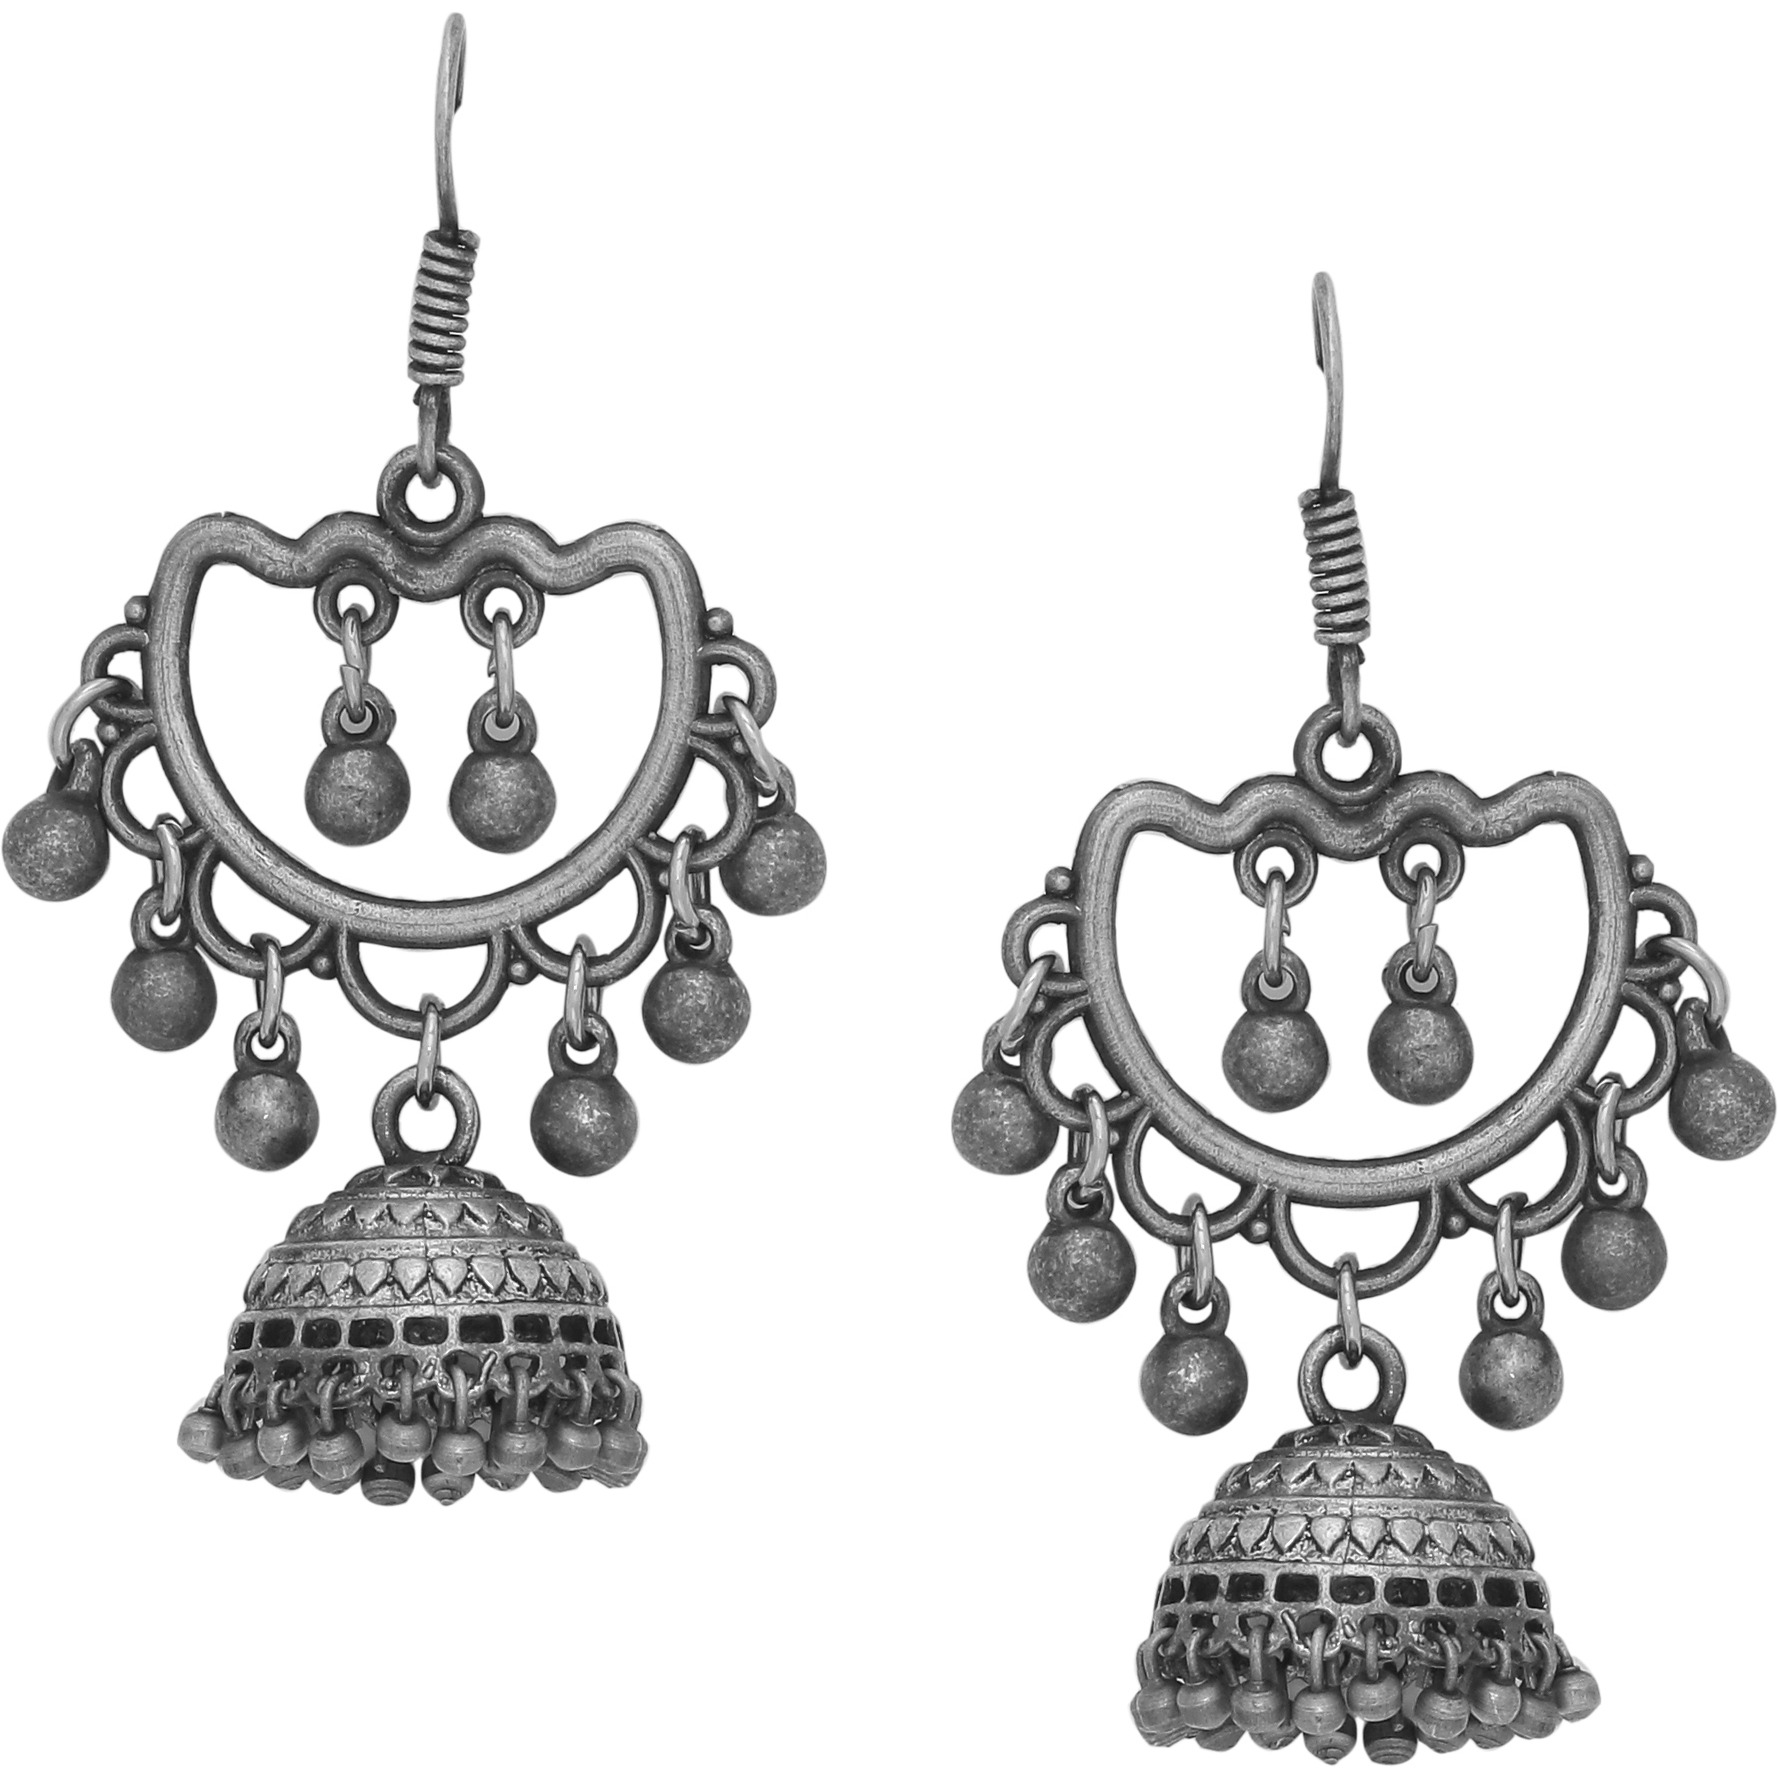 Buy Online Beautiful Silver Plated Jhumka Earrings By Silvermerc ...